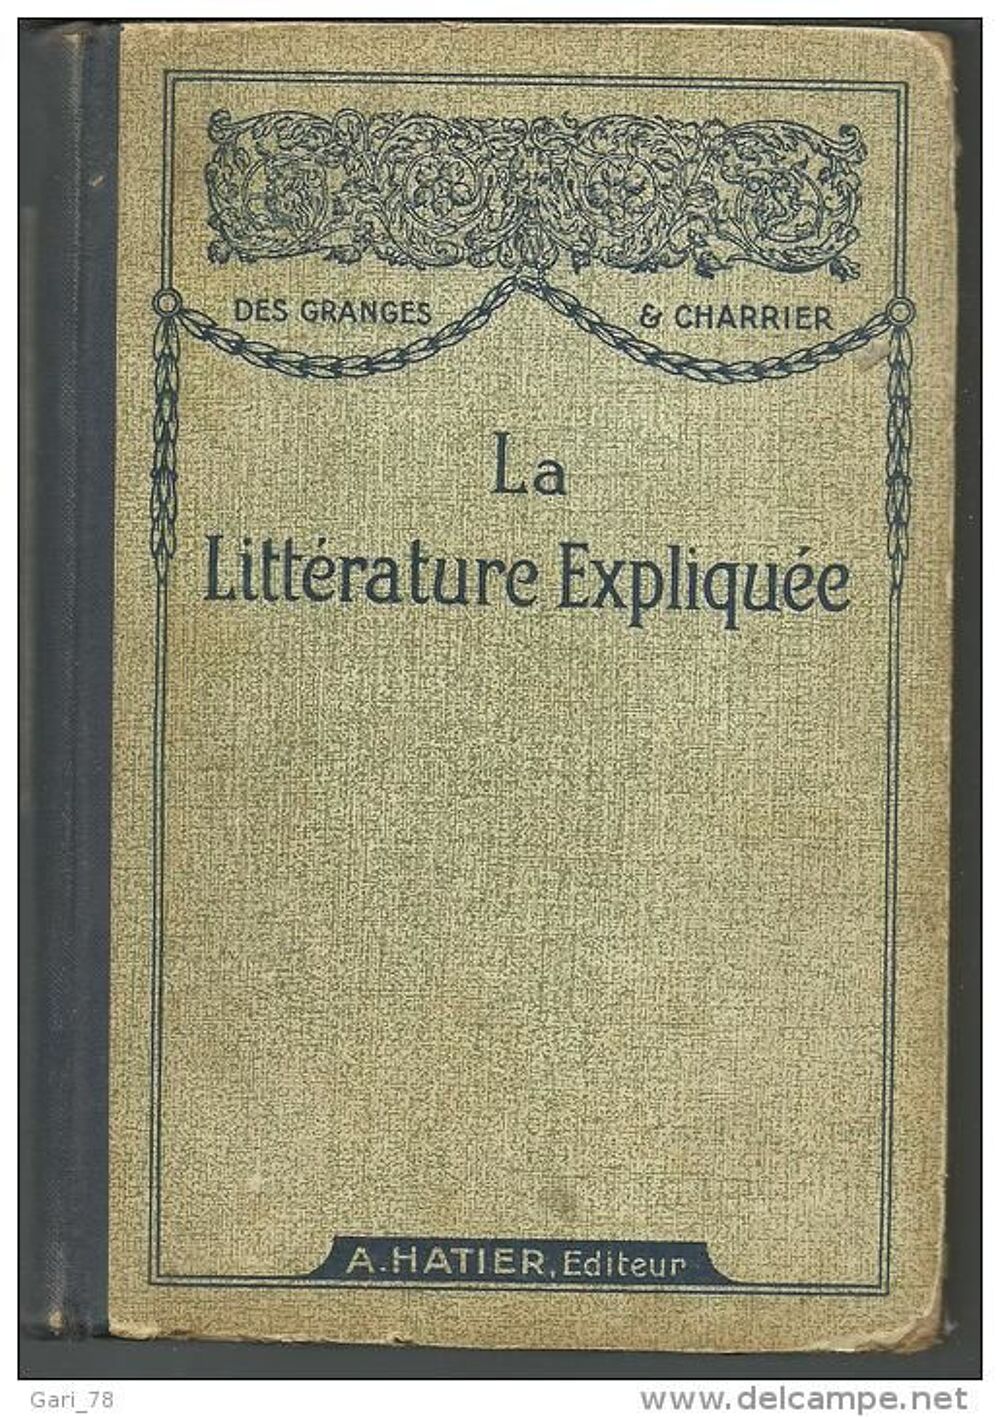 DES GRANGES et CHARRIER La litt&eacute;rature expliqu&eacute;e - 1934 Livres et BD